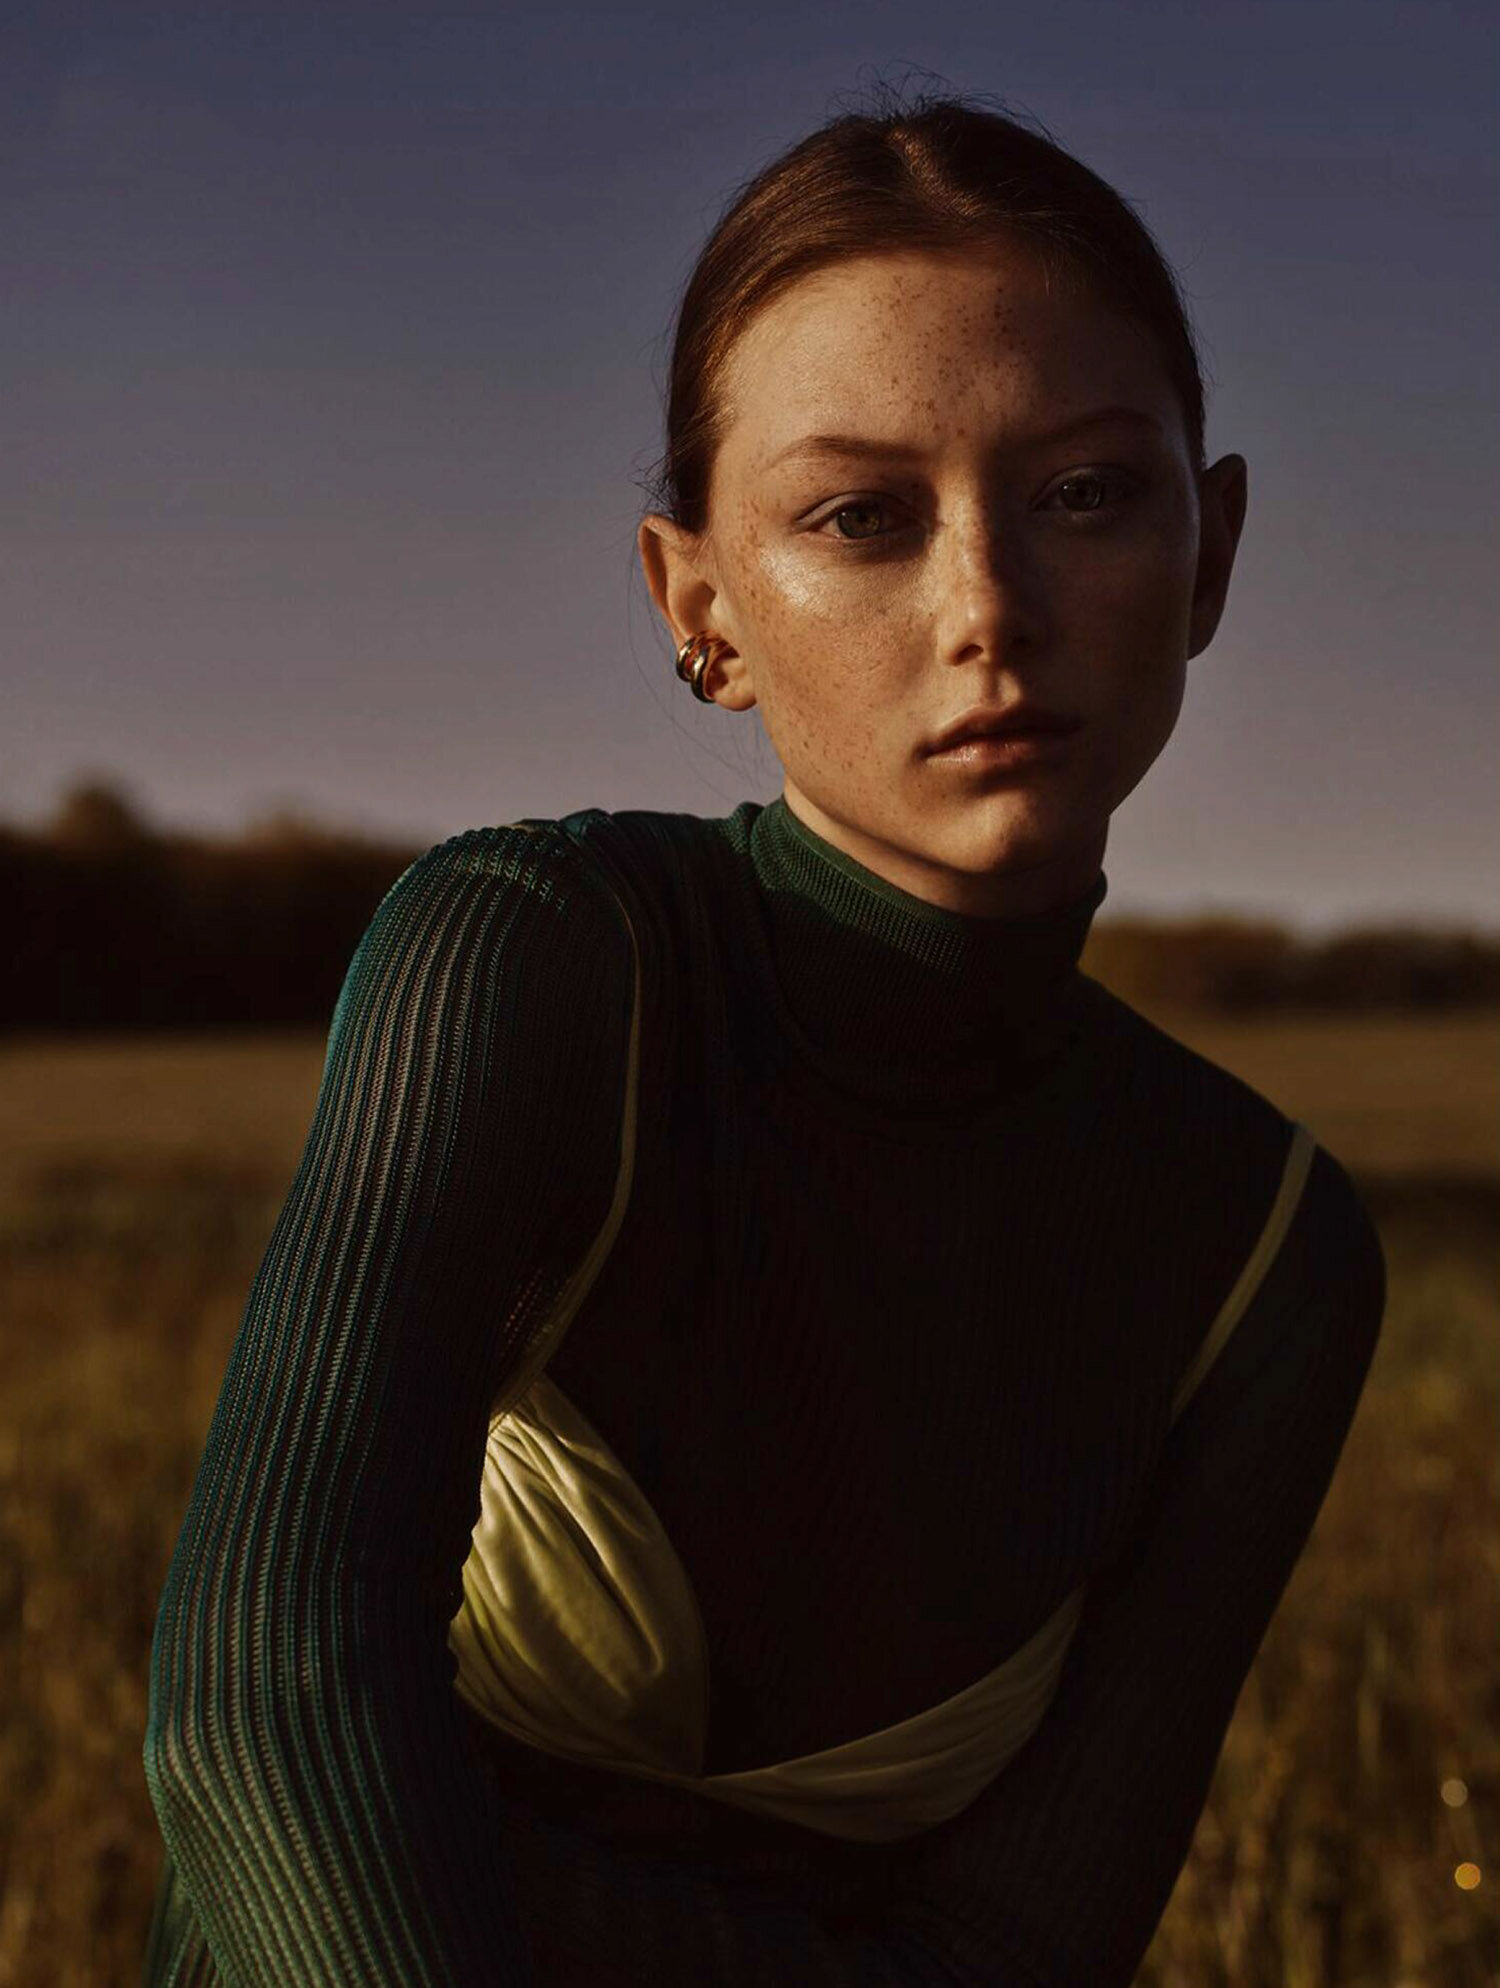 Sara-Grace-Wallerstedt-by-Geordie-Wood-for-Vogue-Australia-July-2021-1.jpg